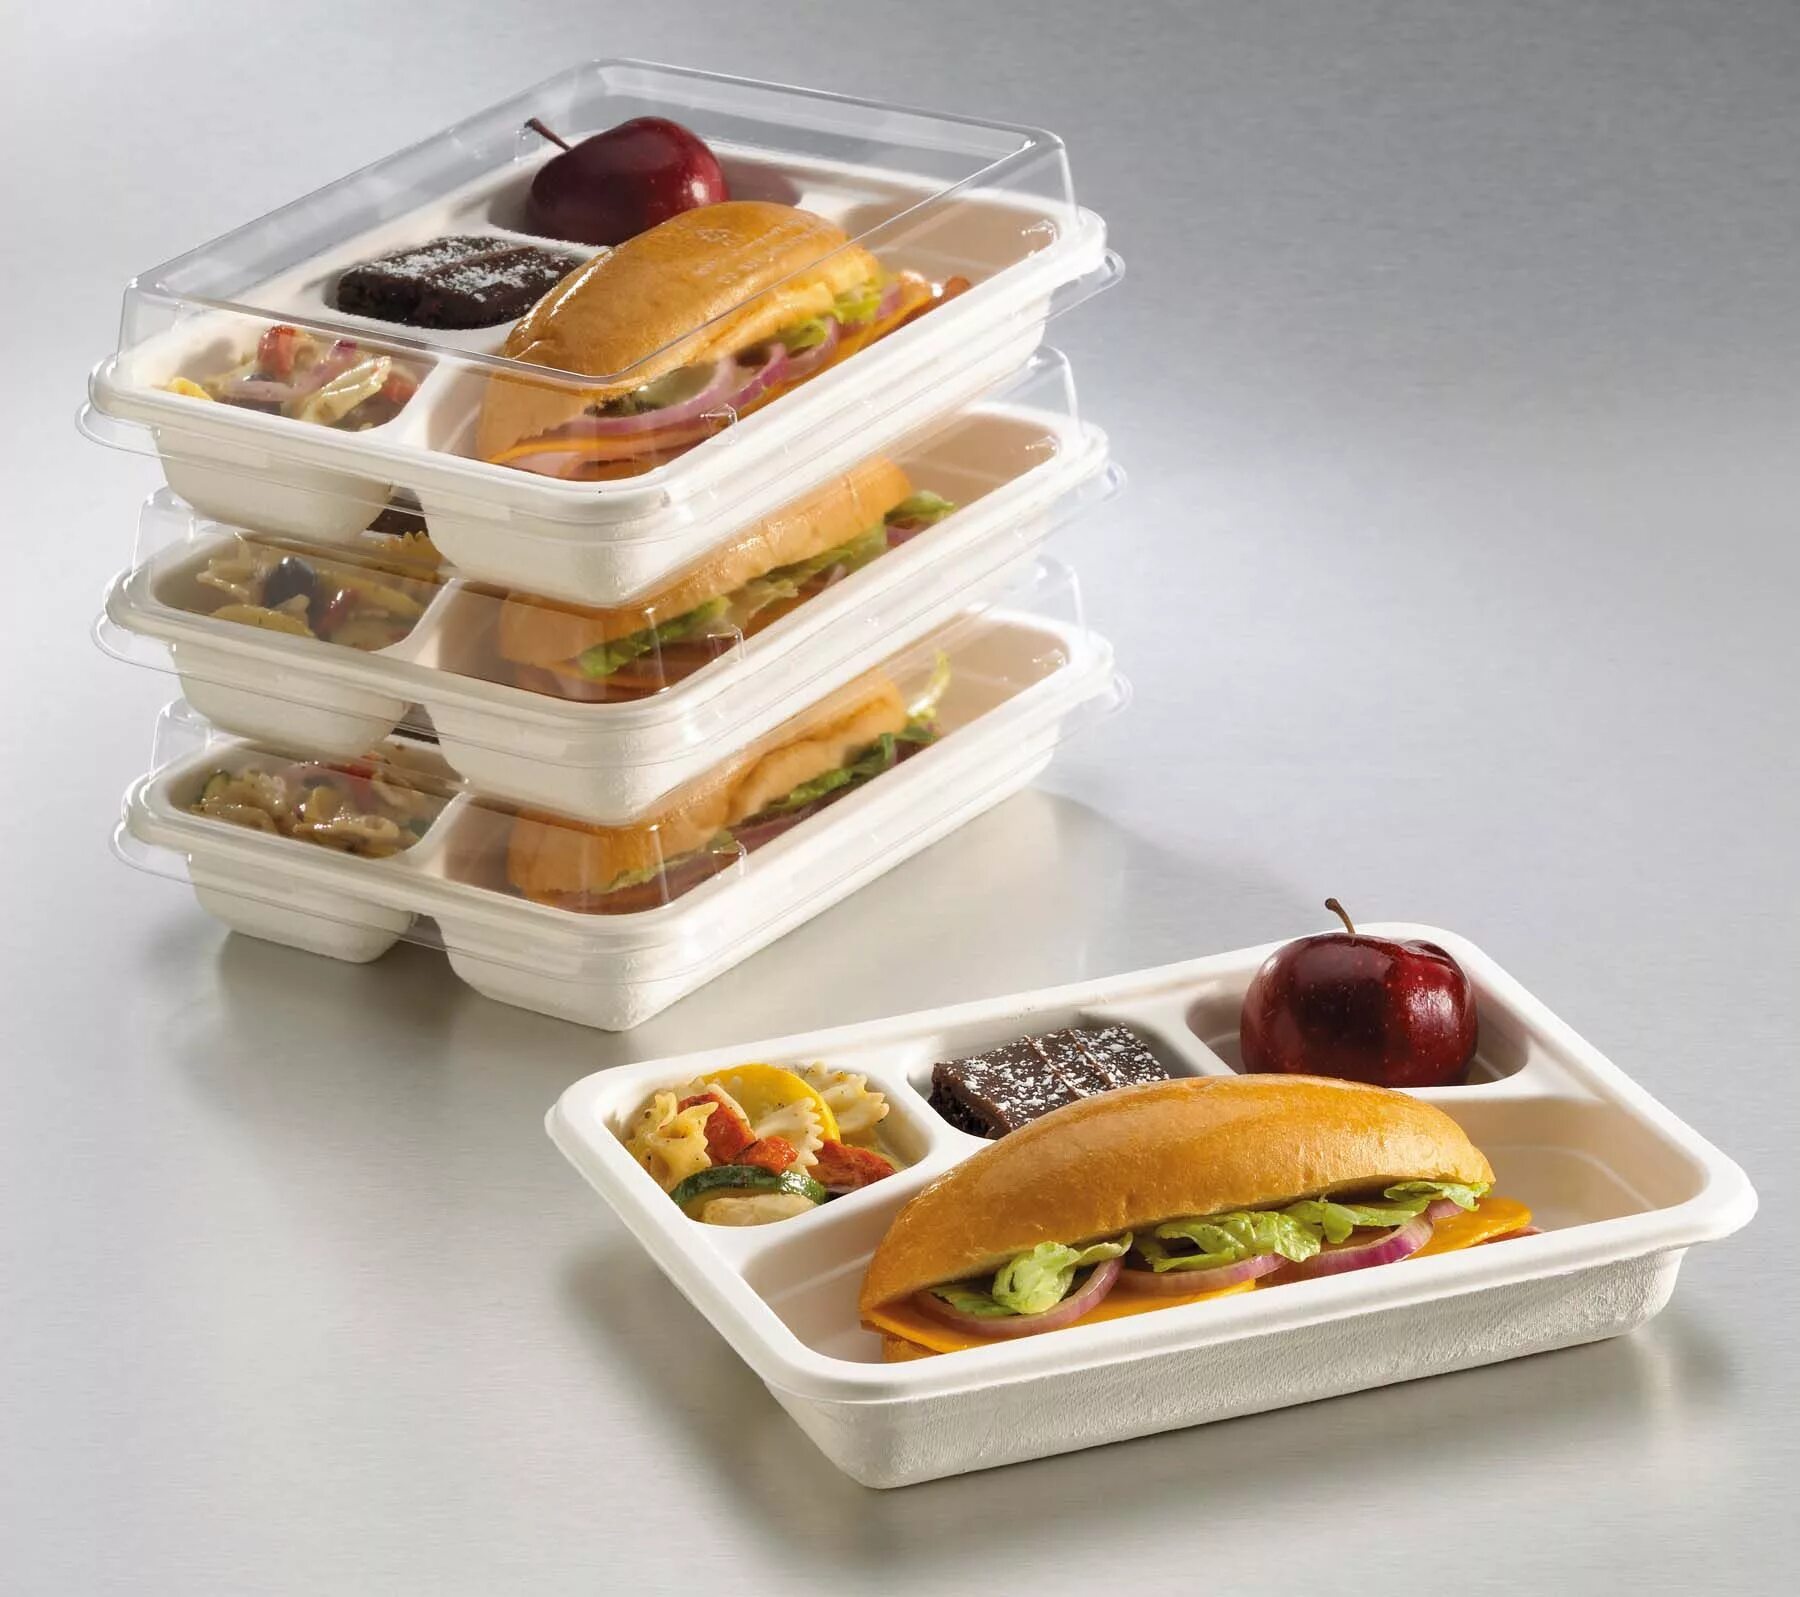 Купить готов питания. Контейнер "комплексный обед". Готовые обеды в контейнерах. Упаковка для еды на вынос. Готовые блюда в контейнерах.